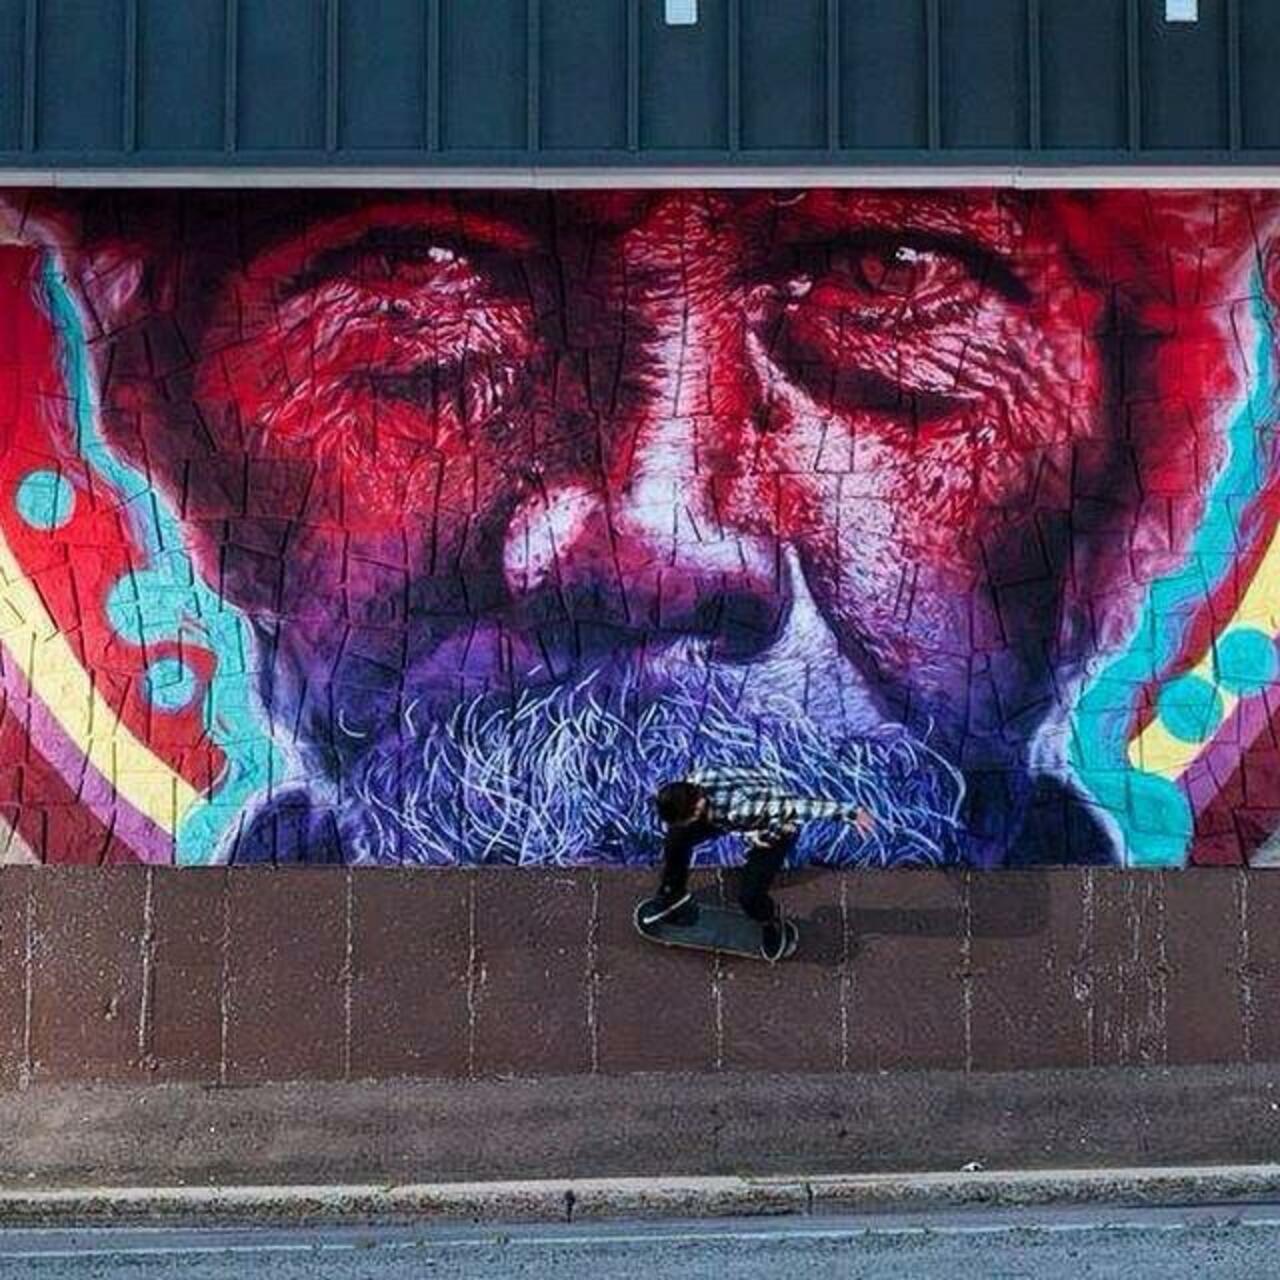 RT @AmbealAmb: From Montcon, Canada, Kevin Ledo’s class Street Art portrait 

#art #mural #graffiti #streetart http://t.co/S4BFoqUD6N